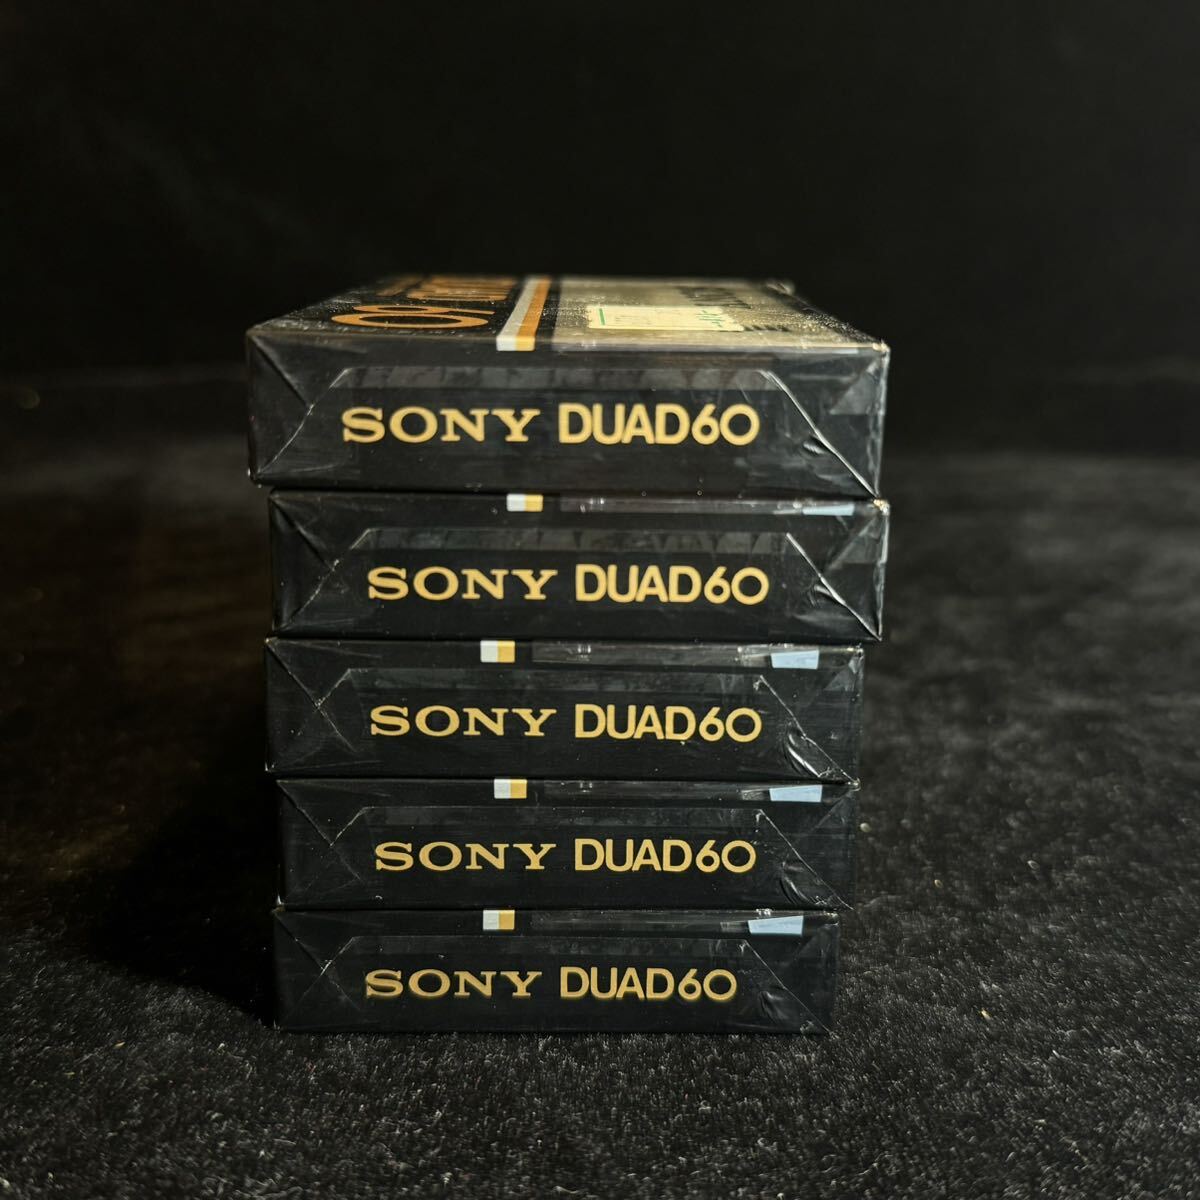 未使用 SONY DUAD 60 カセットテープ 5本セット 大量 まとめ TYPE III (Fe-Cr) Position 未開封 デッドストック type3の画像6